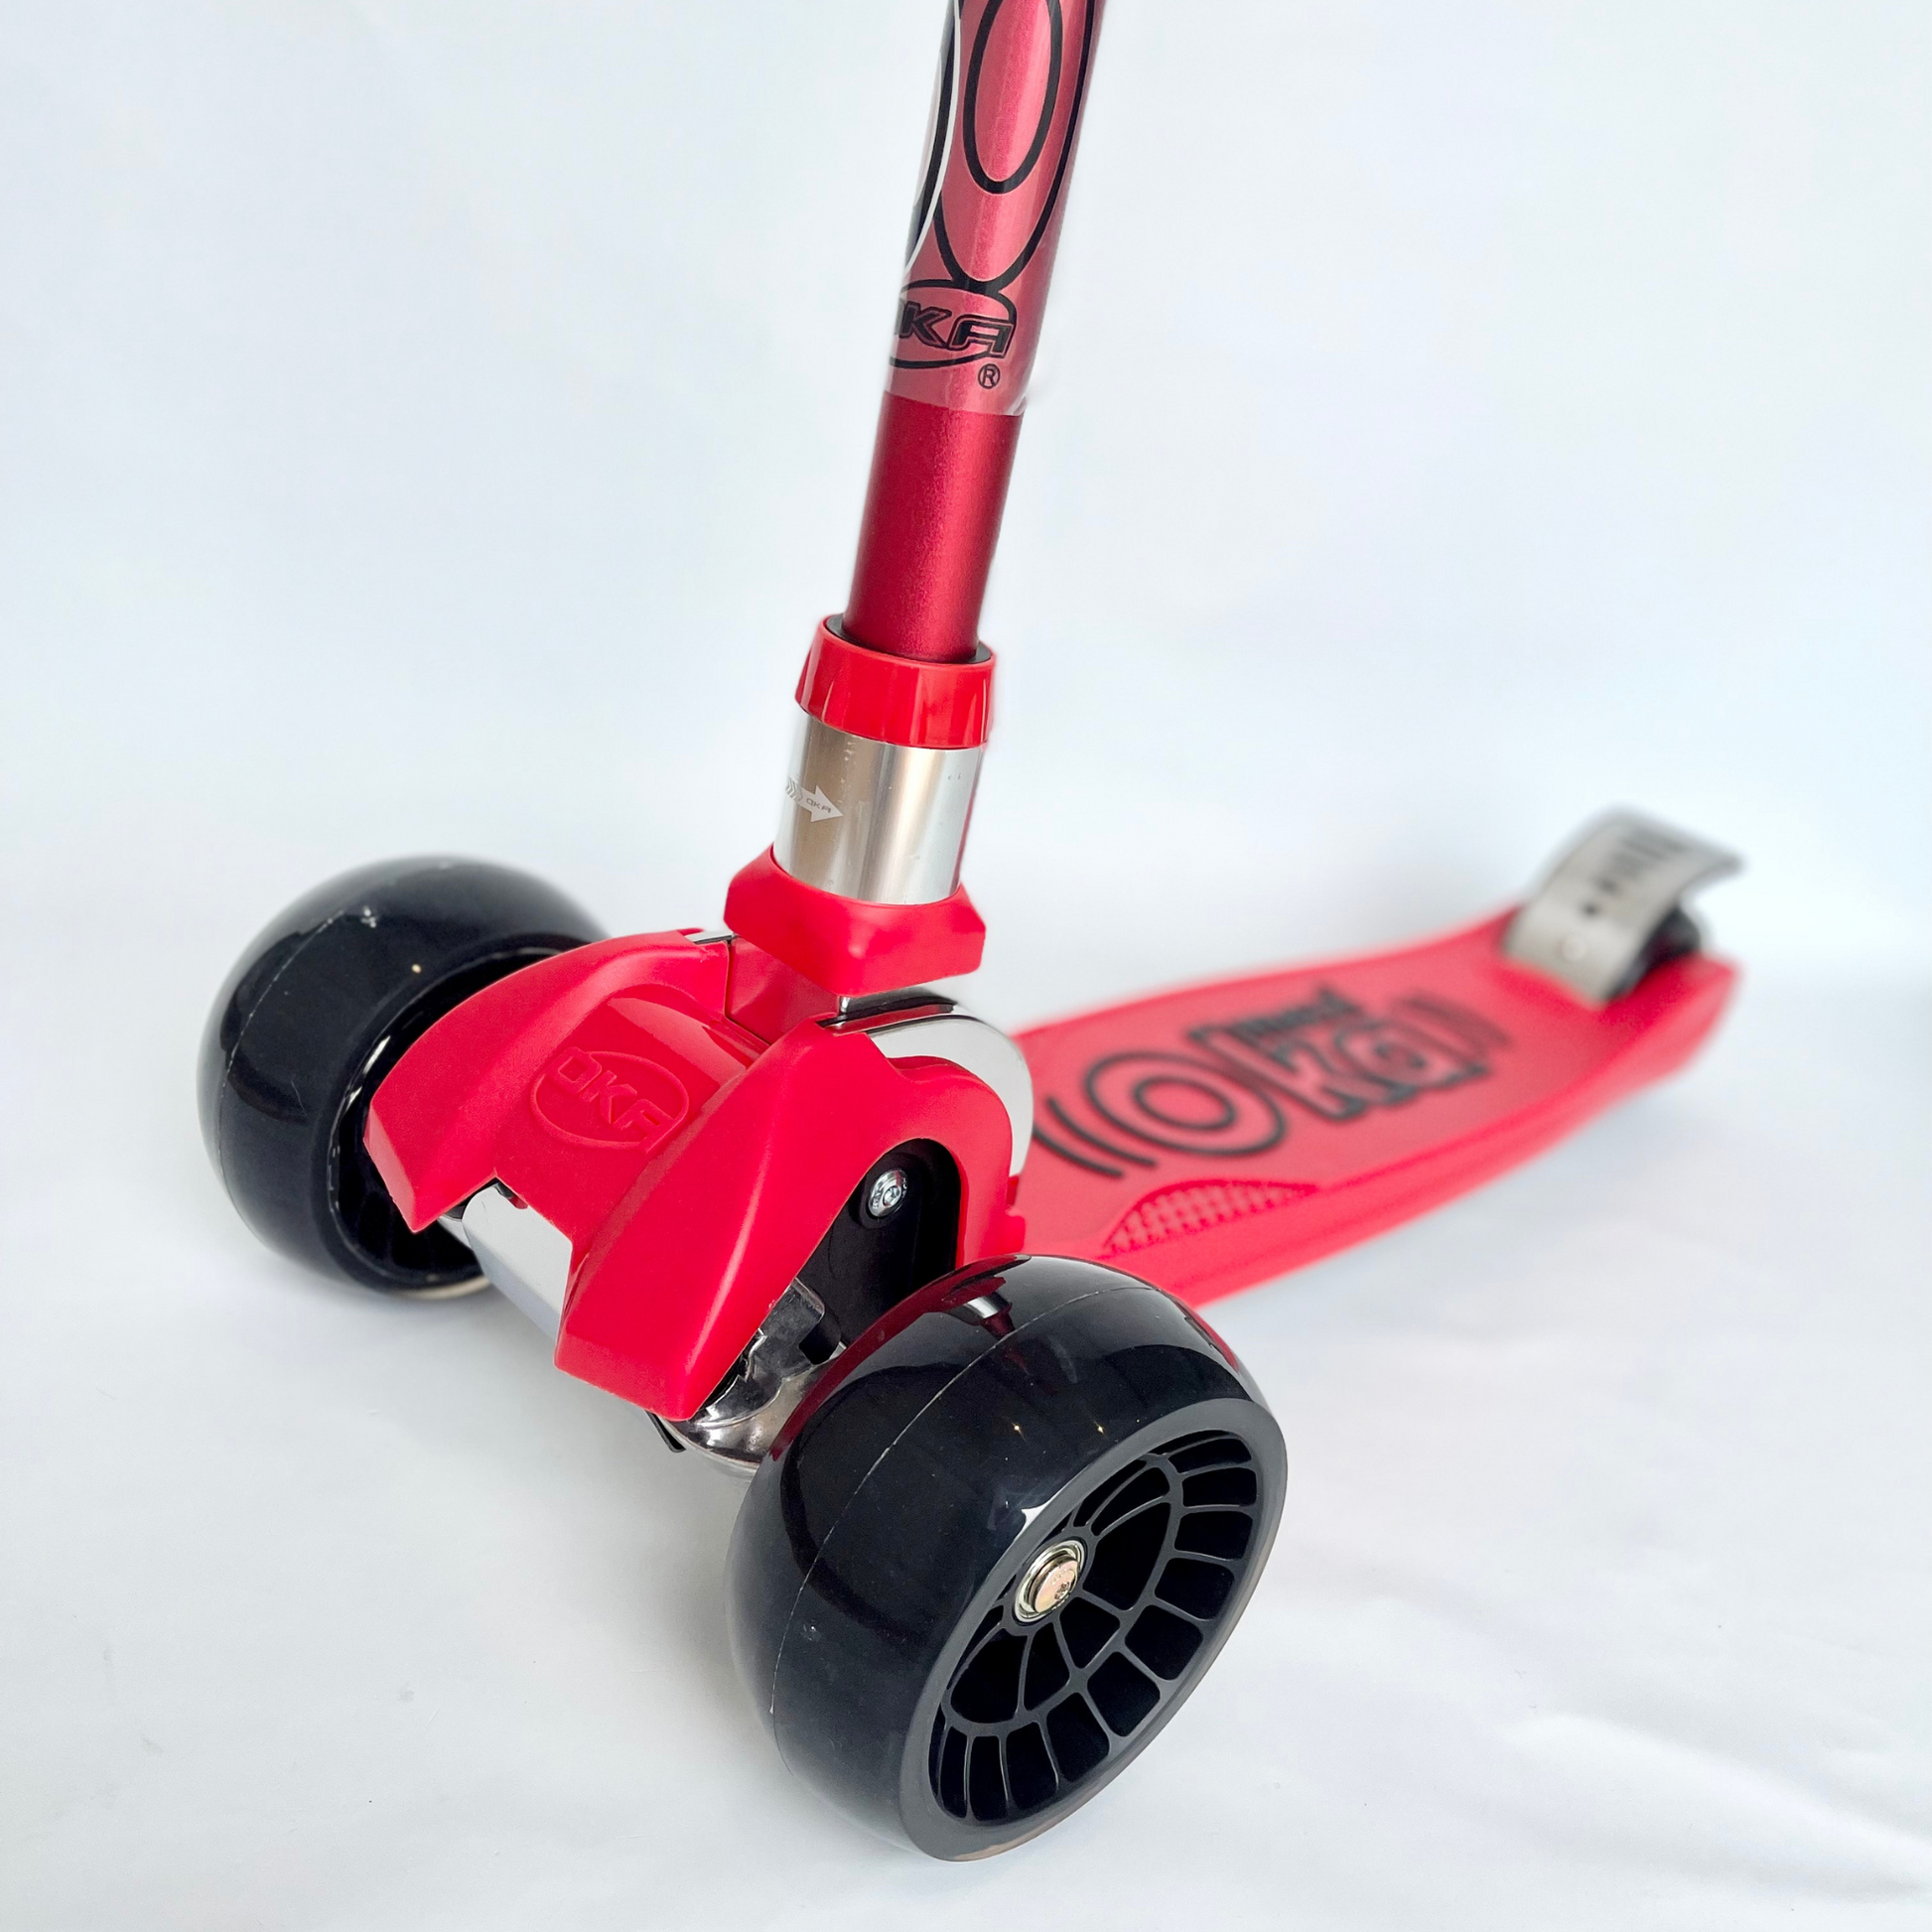 Ruedas delanteras del scooter rojo de tres ruedas OKA para niños de 5 a 12 años. Estructura duradera y manillar ajustable.